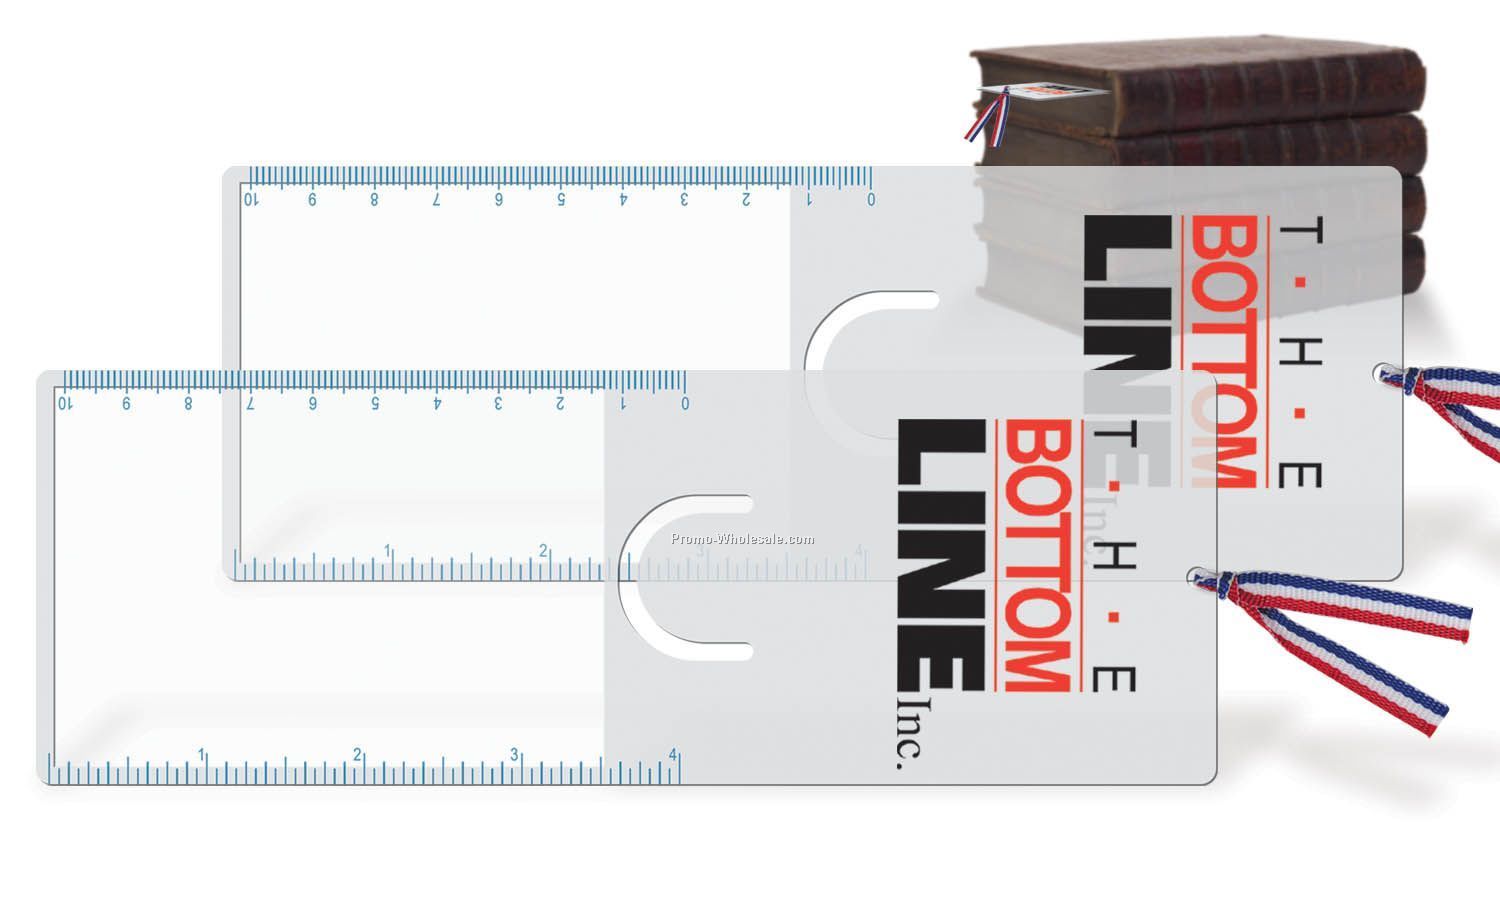 Pro-reader Bookmark / Ruler / Magnifier